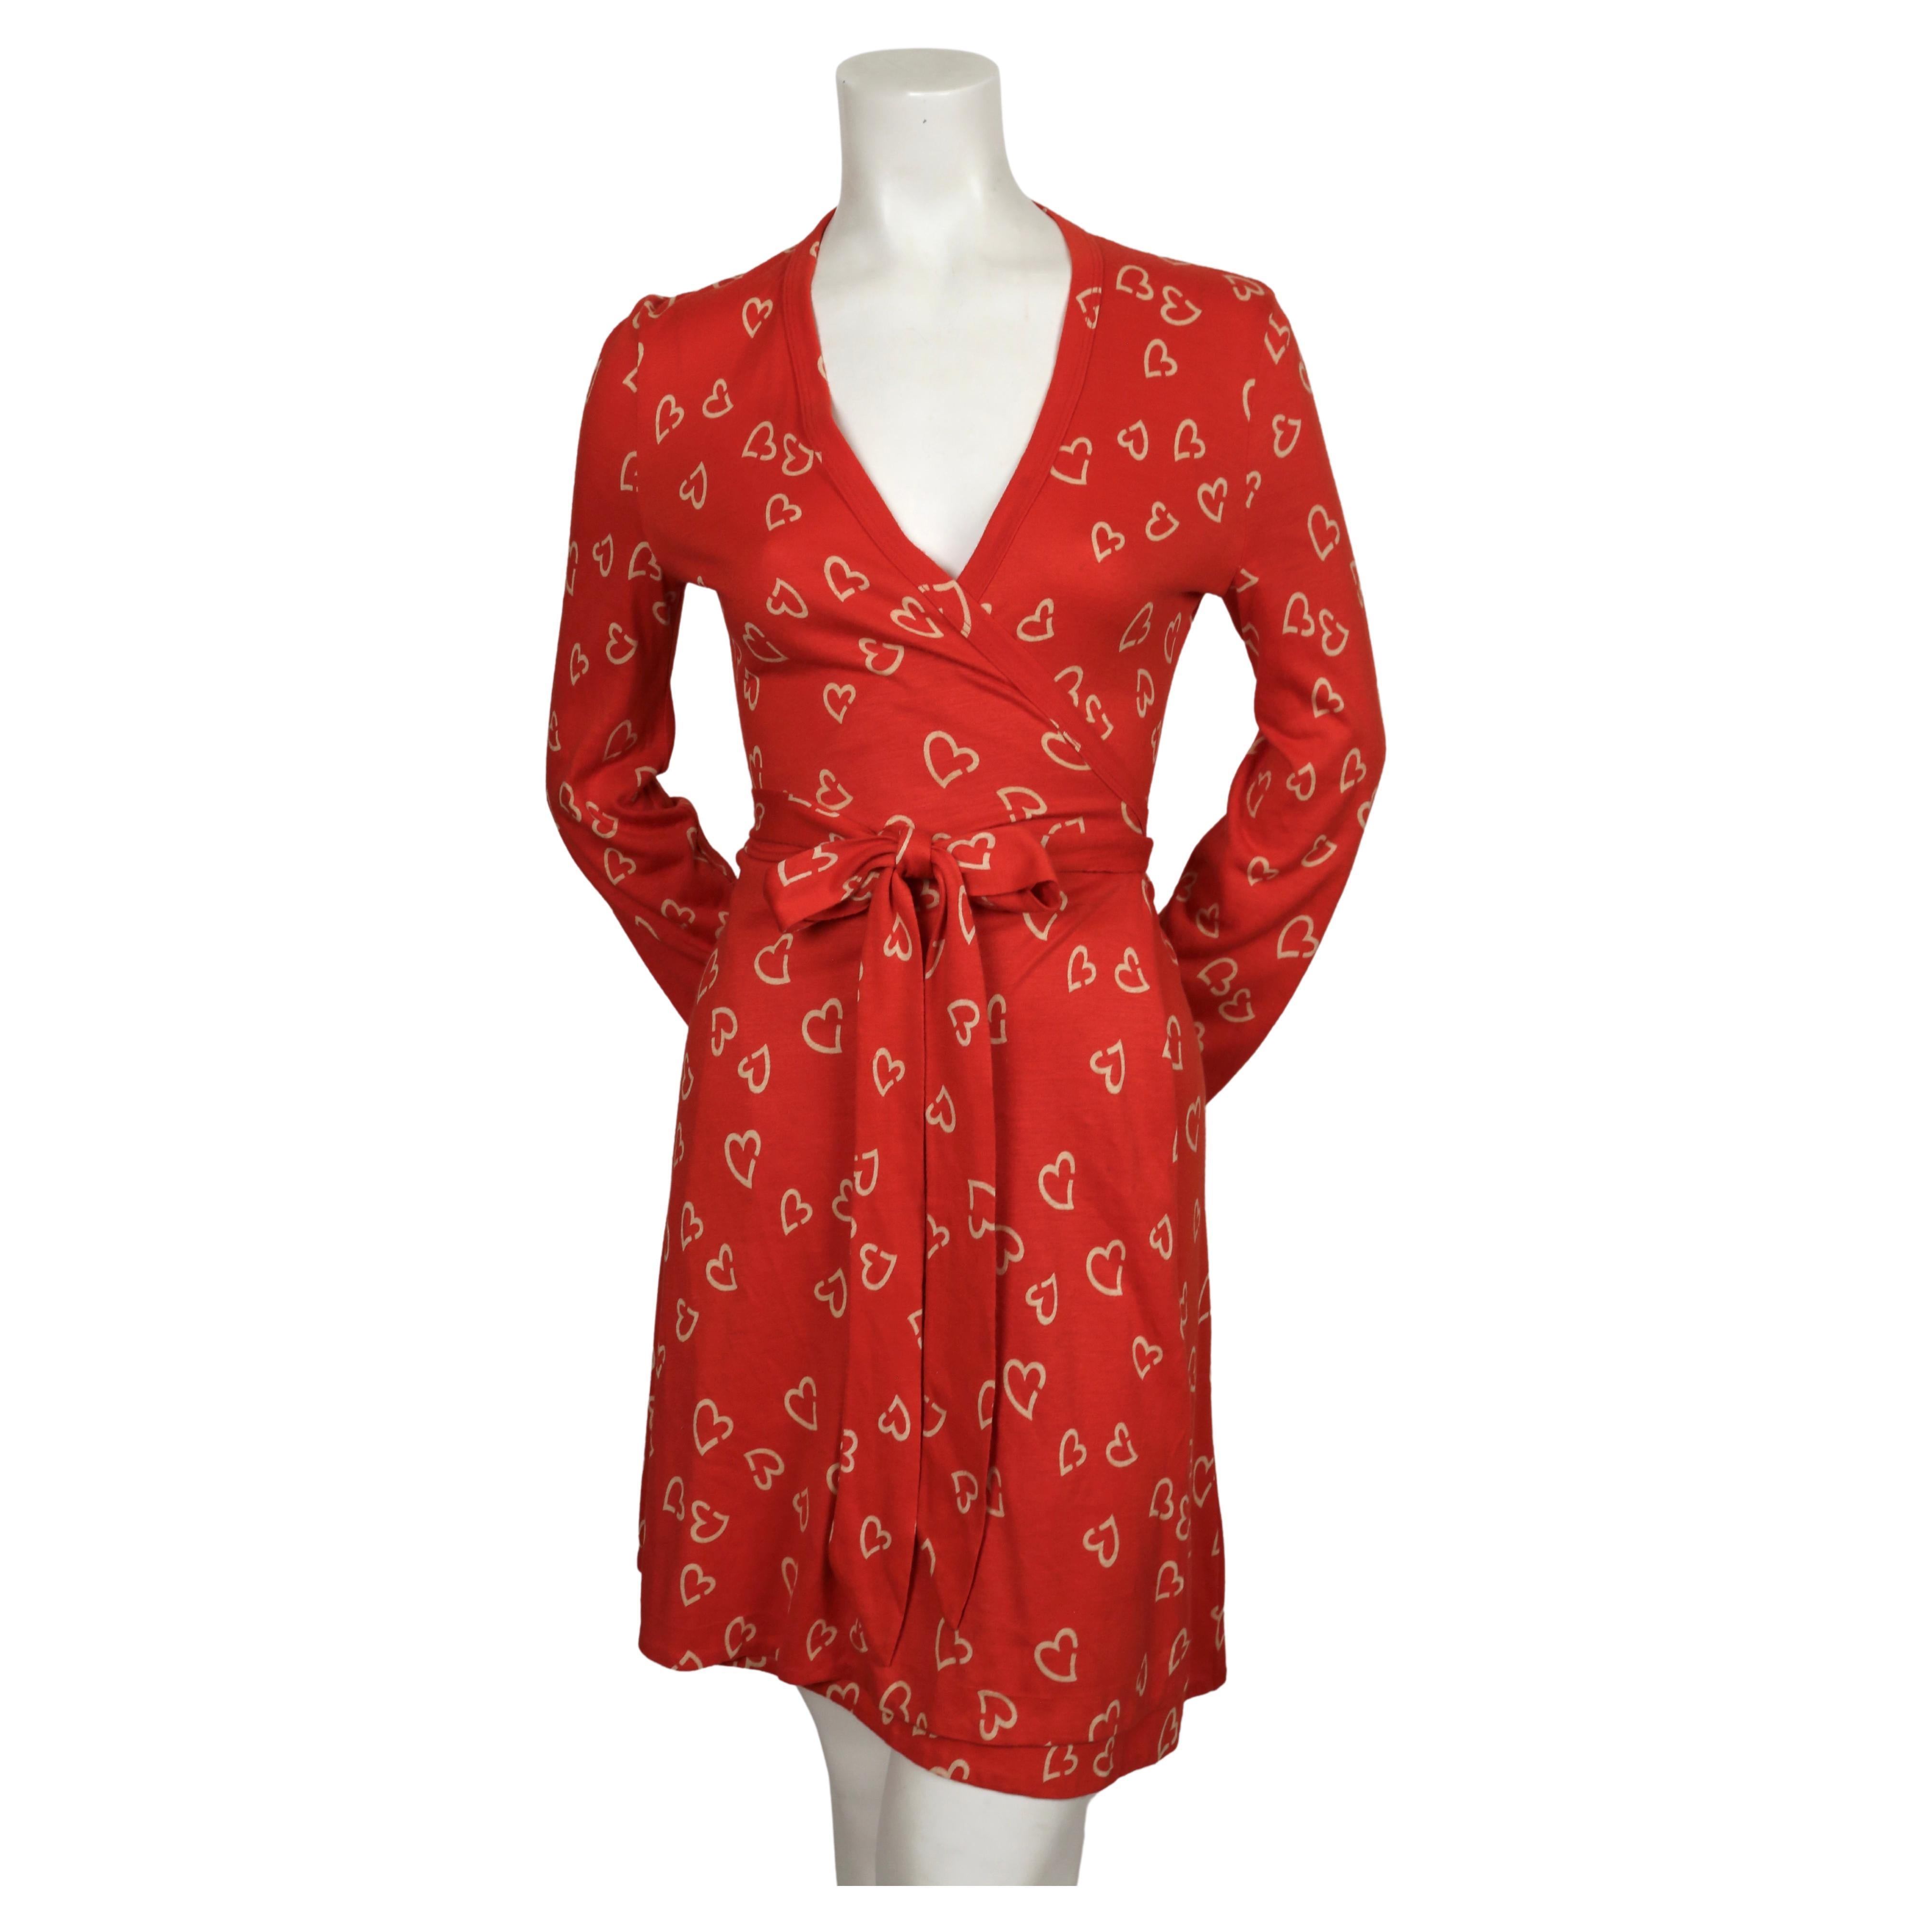 Robe portefeuille rouge et blanc cassé, imprimée de cœurs, de Diane Von Furstenberg, datant des années 1970. Taille Vintage 10 mais cette taille est beaucoup plus petite. La robe n'était pas clipsée sur le mannequin taille 2. Convient le mieux à une